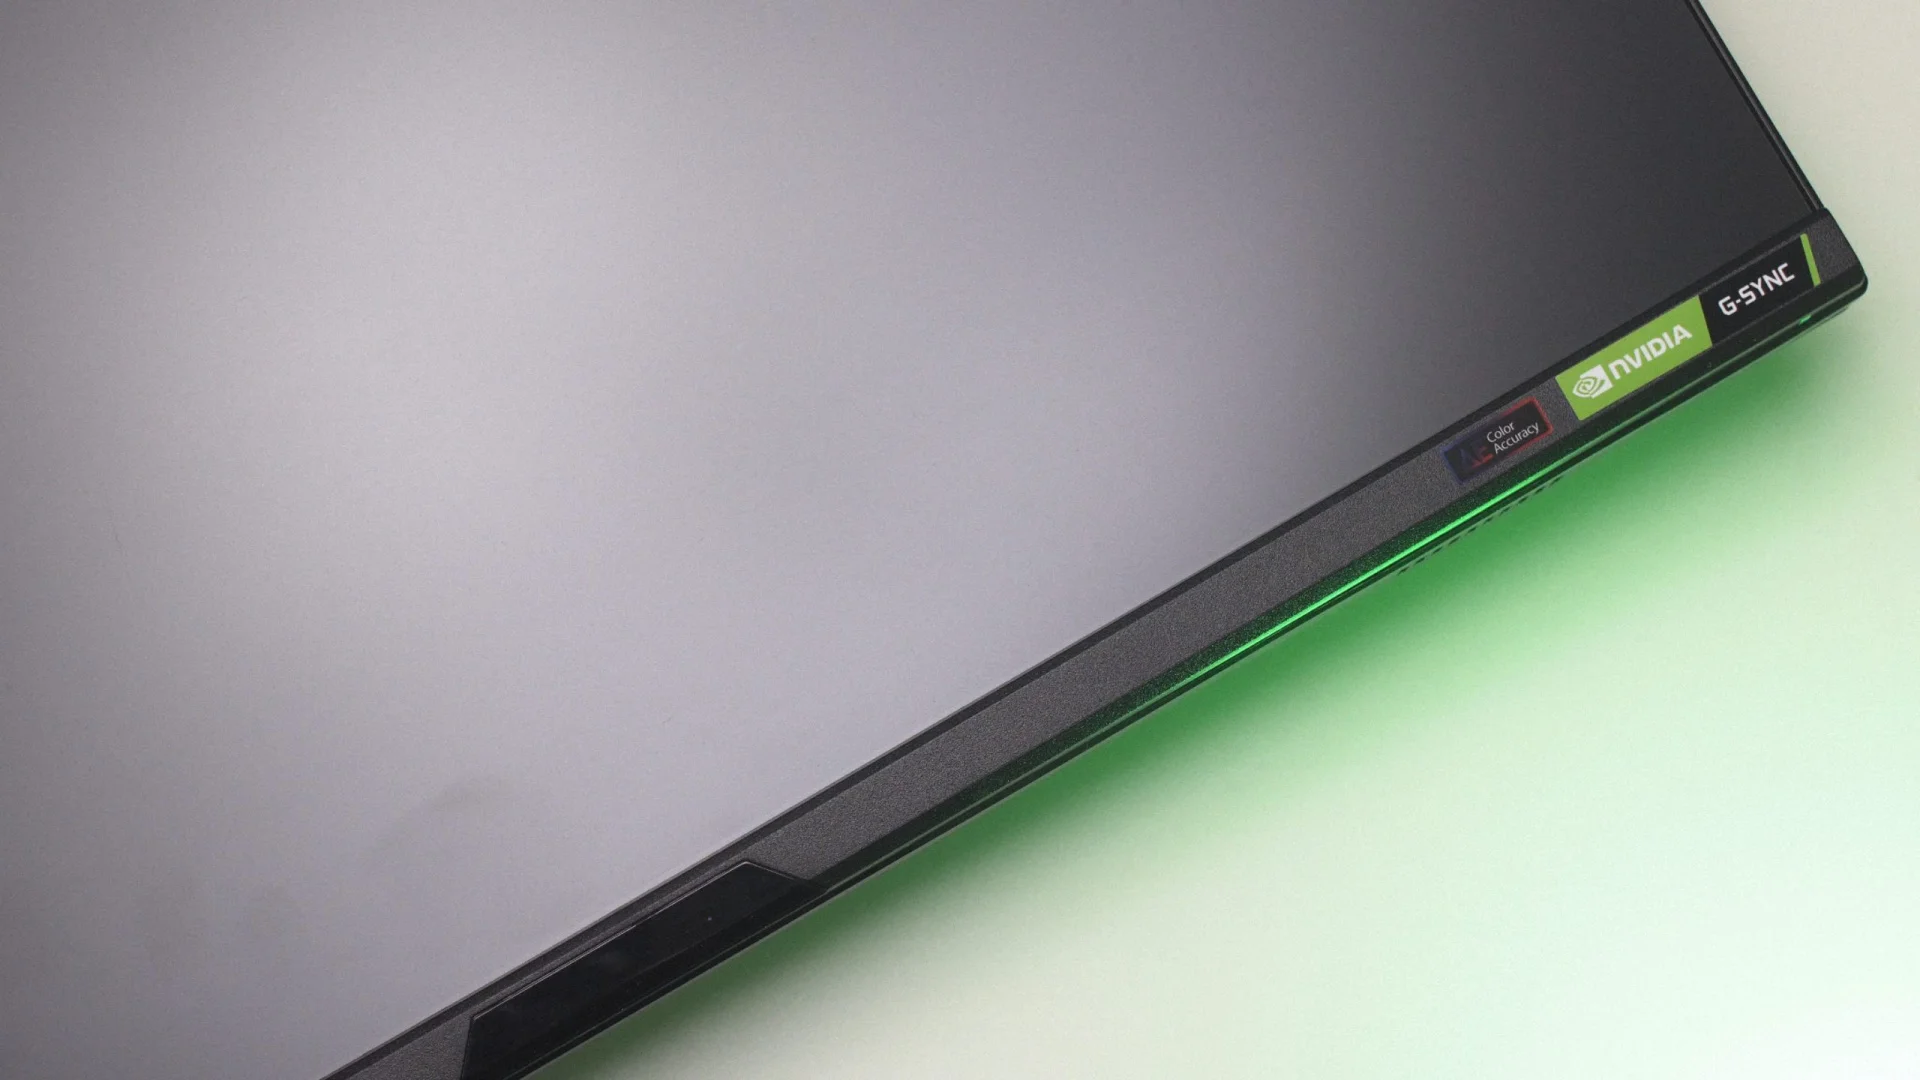 360 Гц на IPS — правда или вымысел? Тест игрового монитора Acer Predator X25 - фото 1